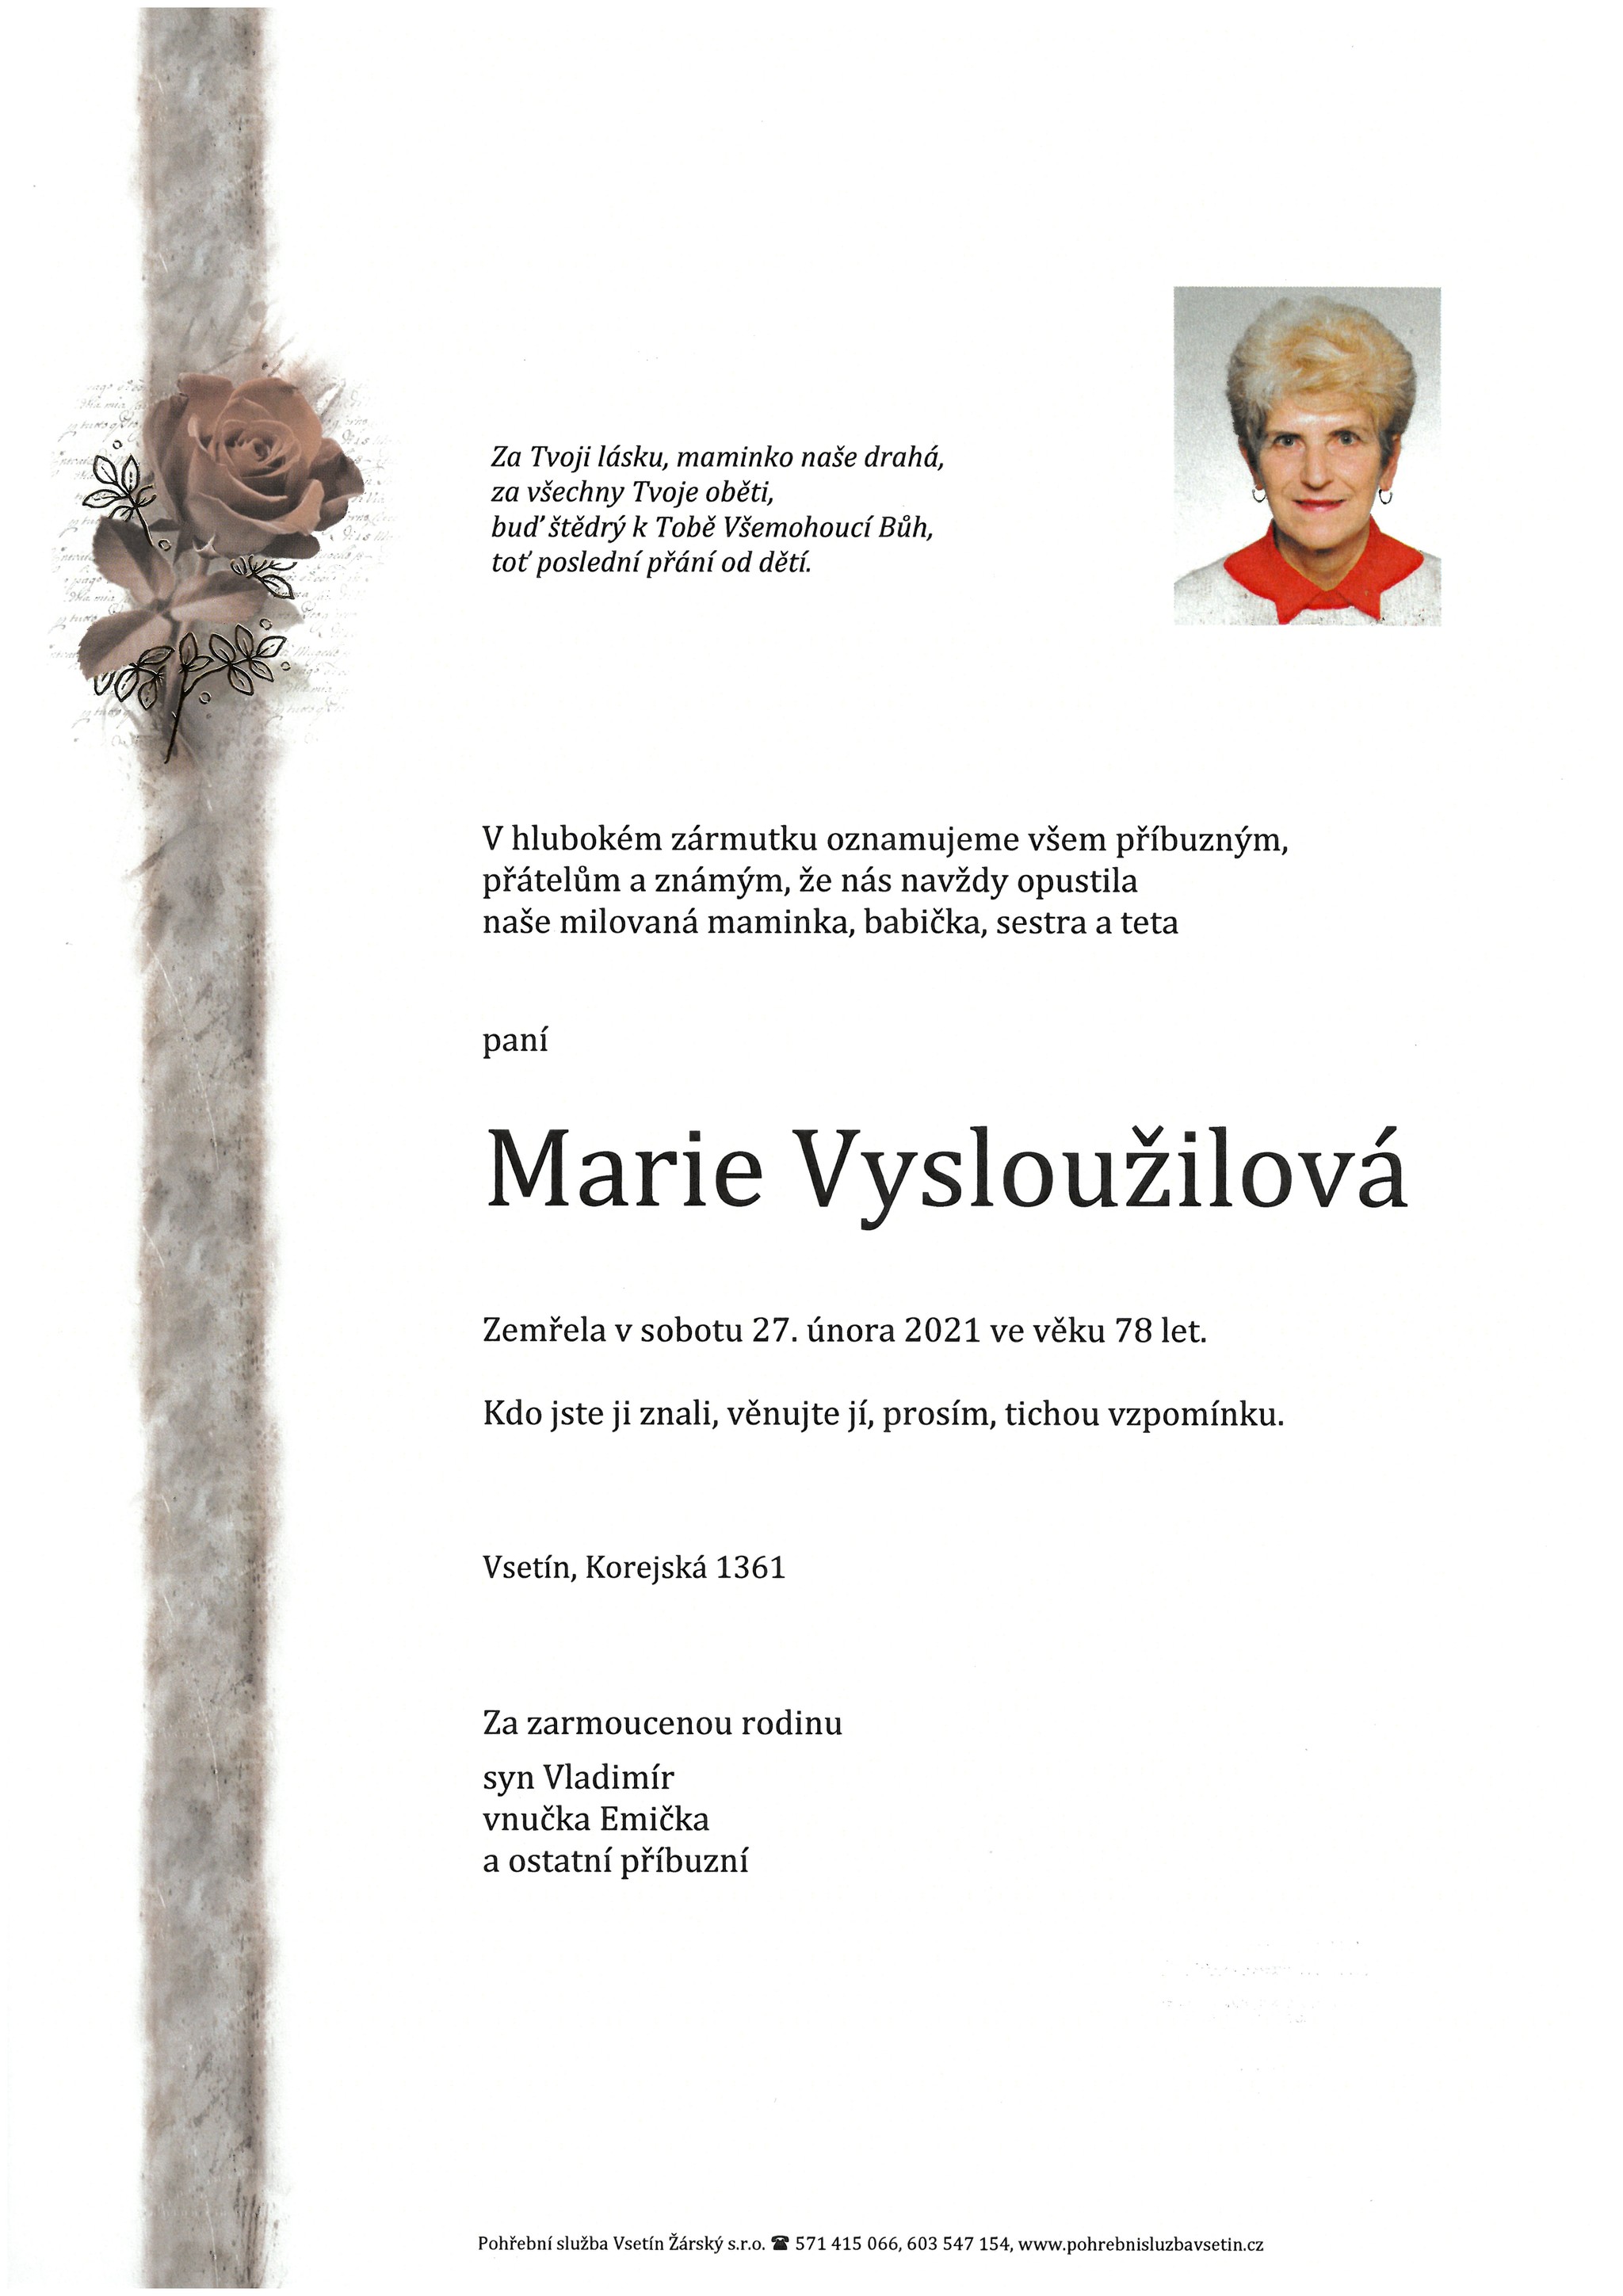 Marie Vysloužilová